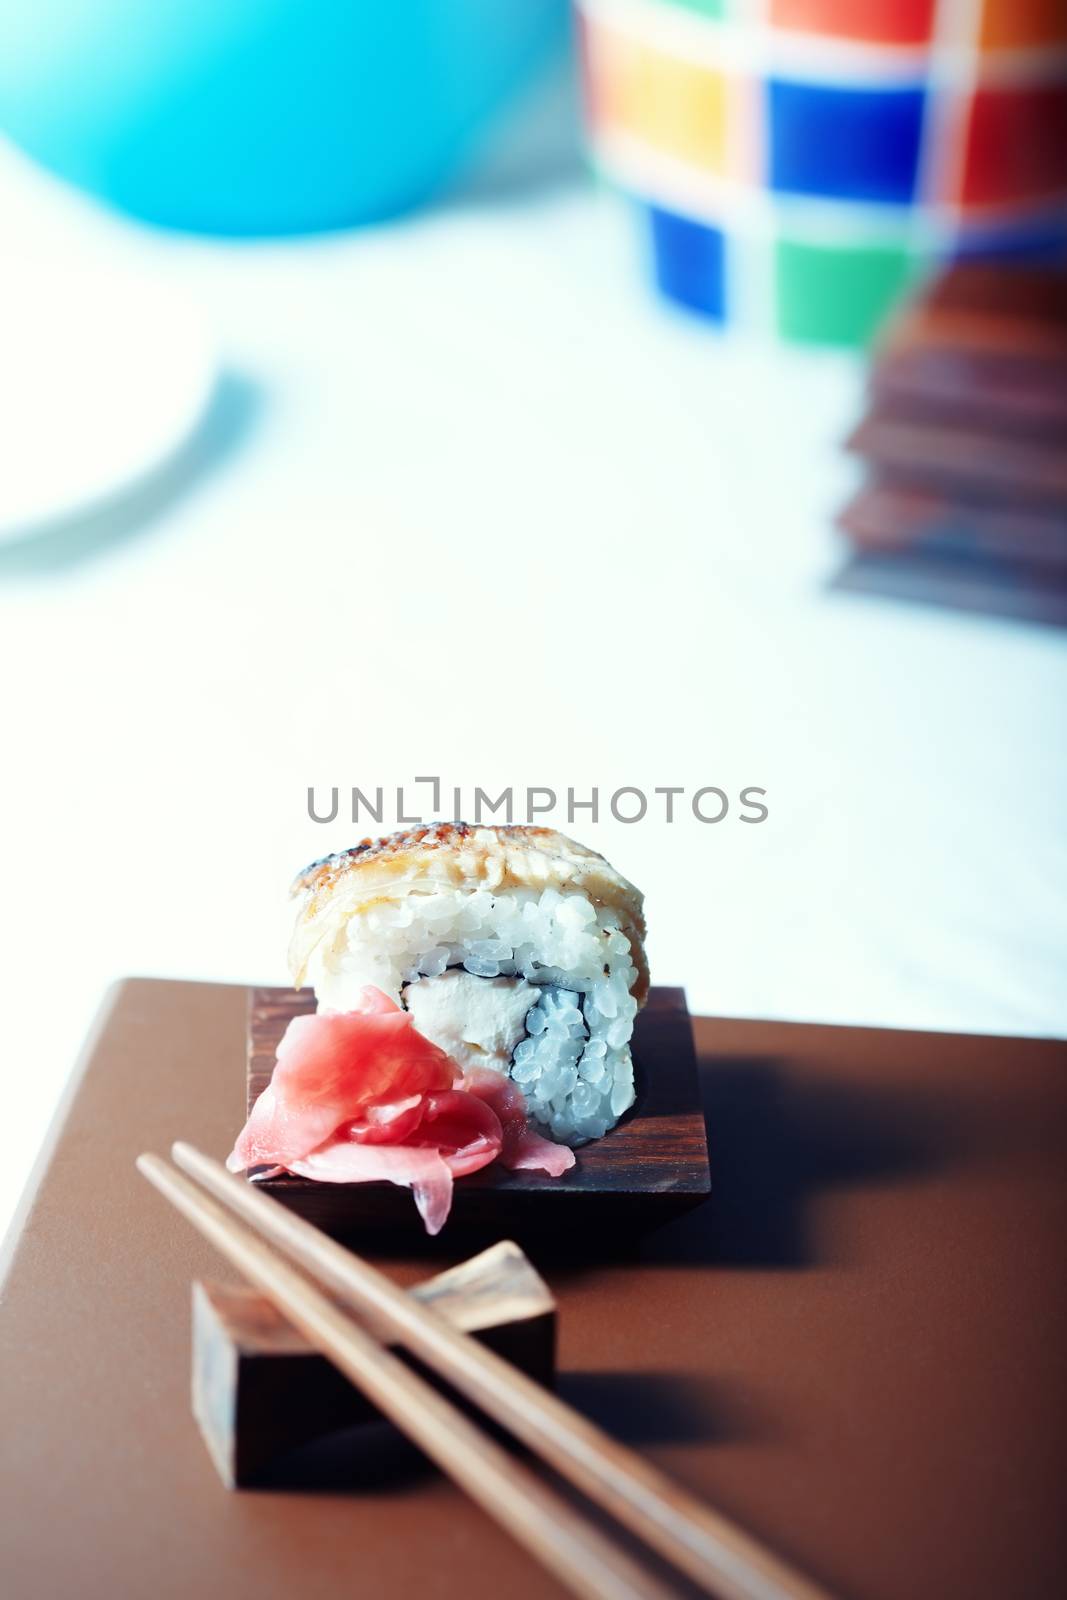 Sushi by Novic